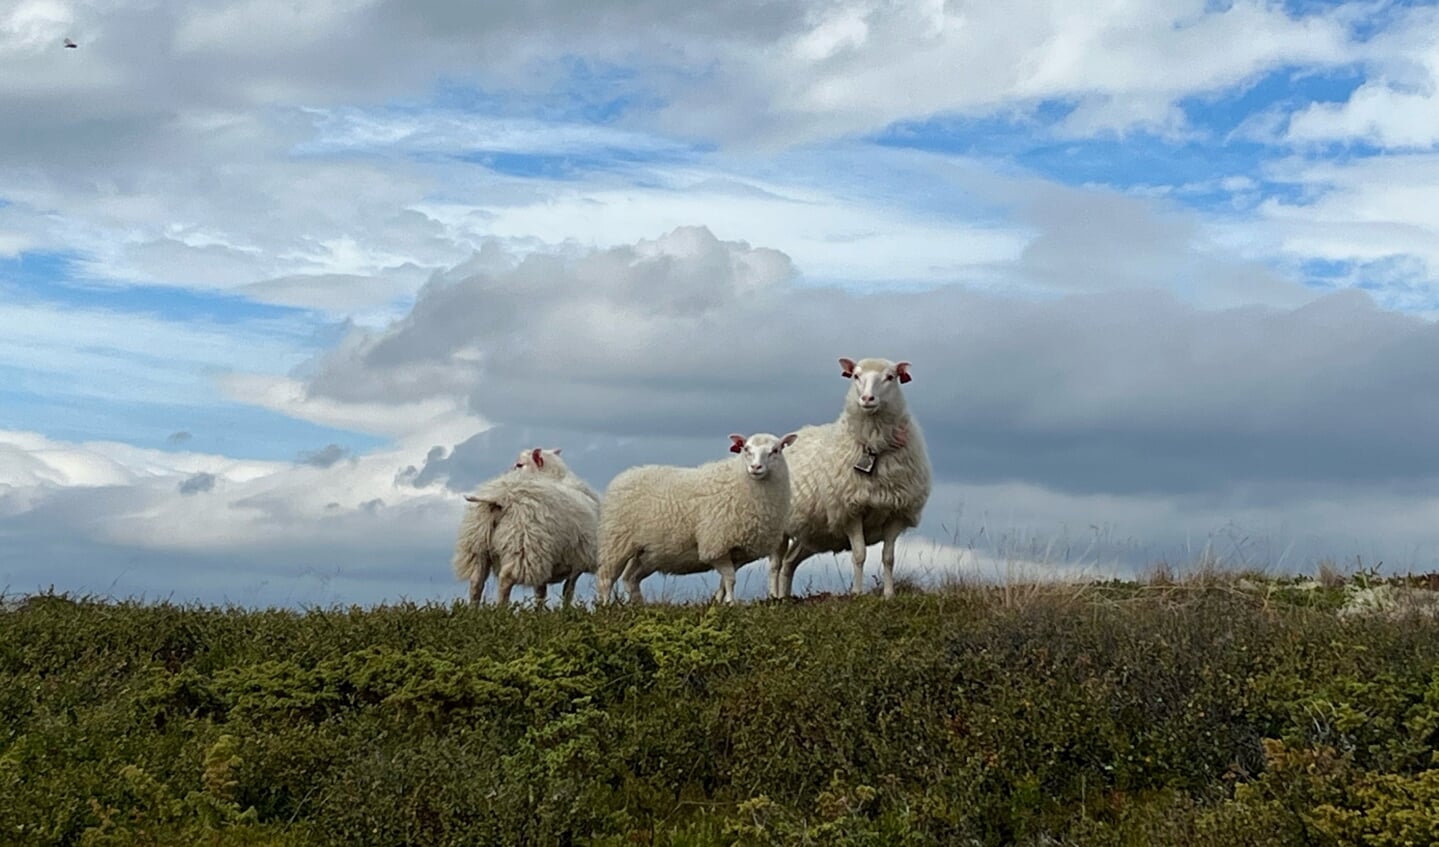 Tijdens een prachtige wandeling in Noorwegen deze schapen tegen gekomen.